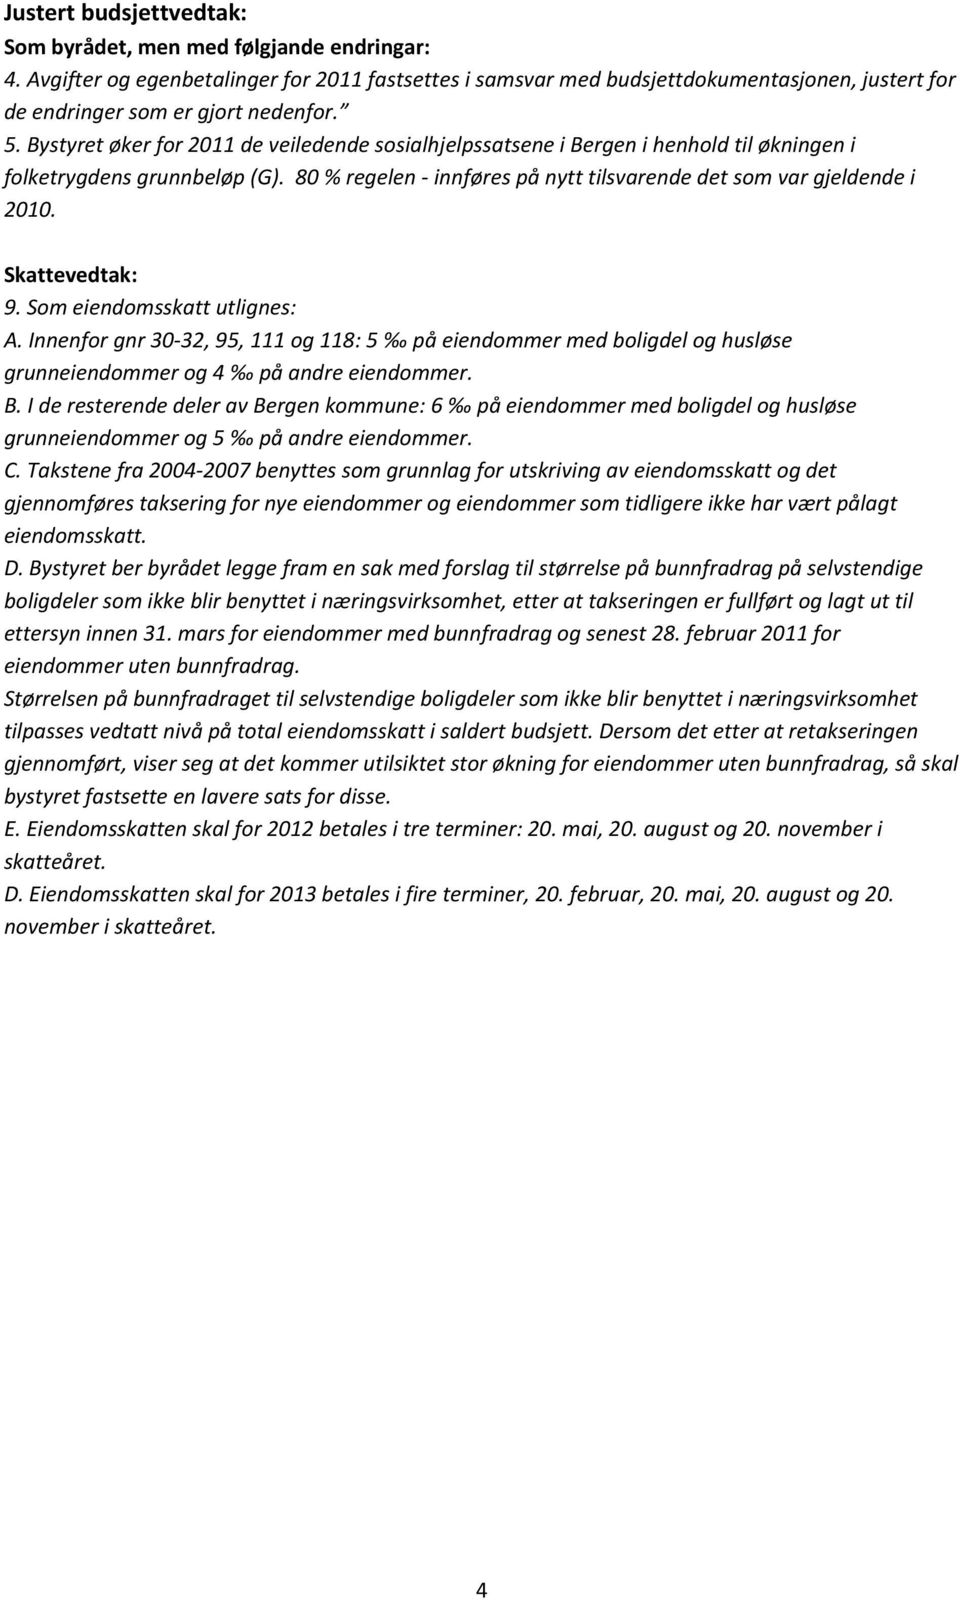 Bystyret øker for 2011 de veiledende sosialhjelpssatsene i Bergen i henhold til økningen i folketrygdens grunnbeløp (G). 80 % regelen - innføres på nytt tilsvarende det som var gjeldende i 2010.